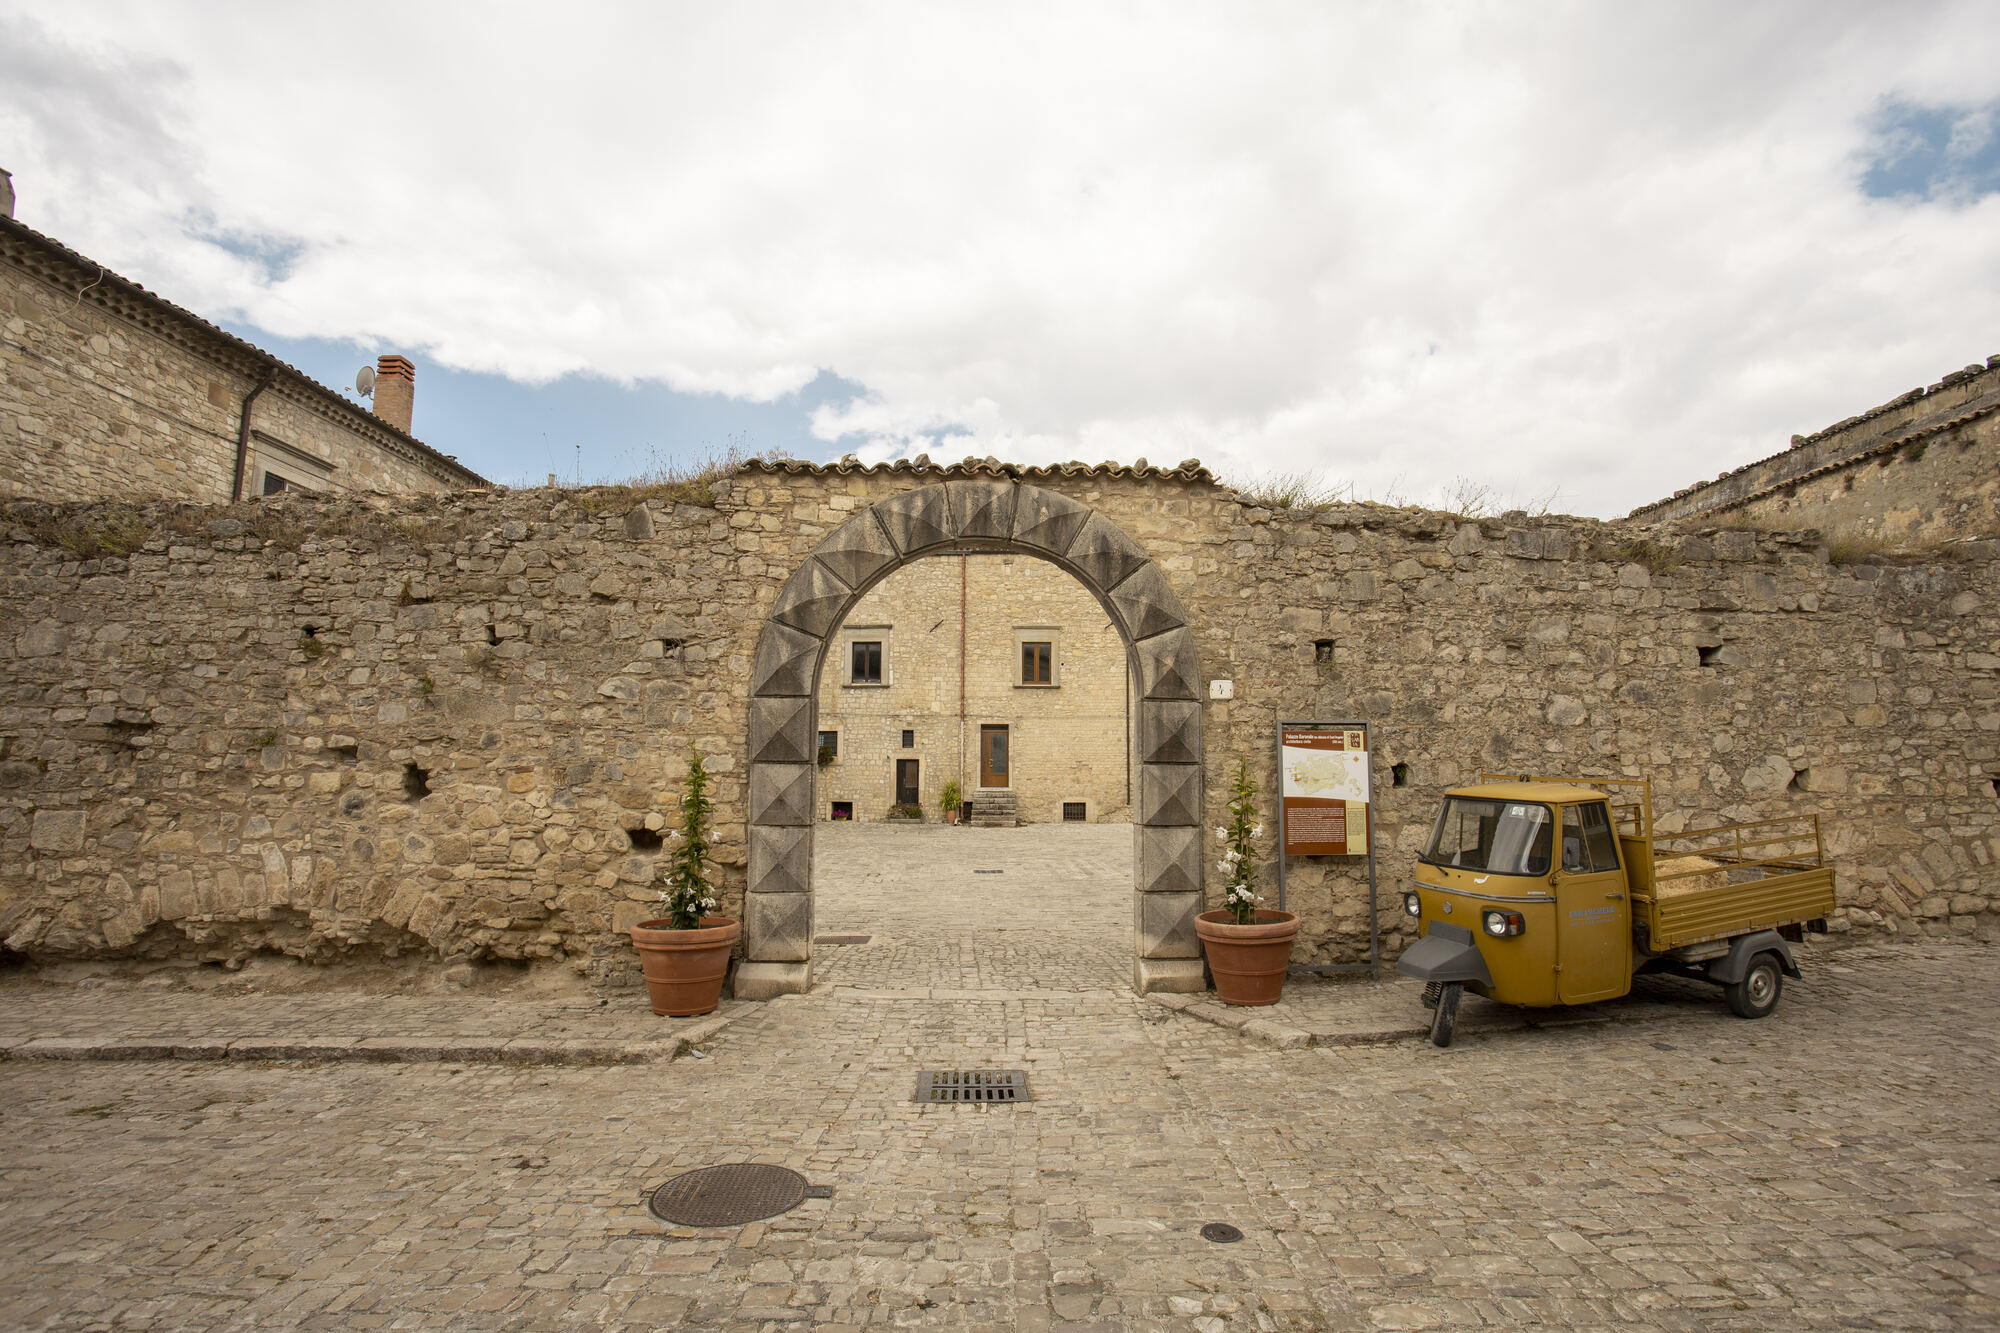 Il Palazzo Baronale di Orsara di Puglia, ex monastero, è un'importante attrazione con storia e architettura uniche.